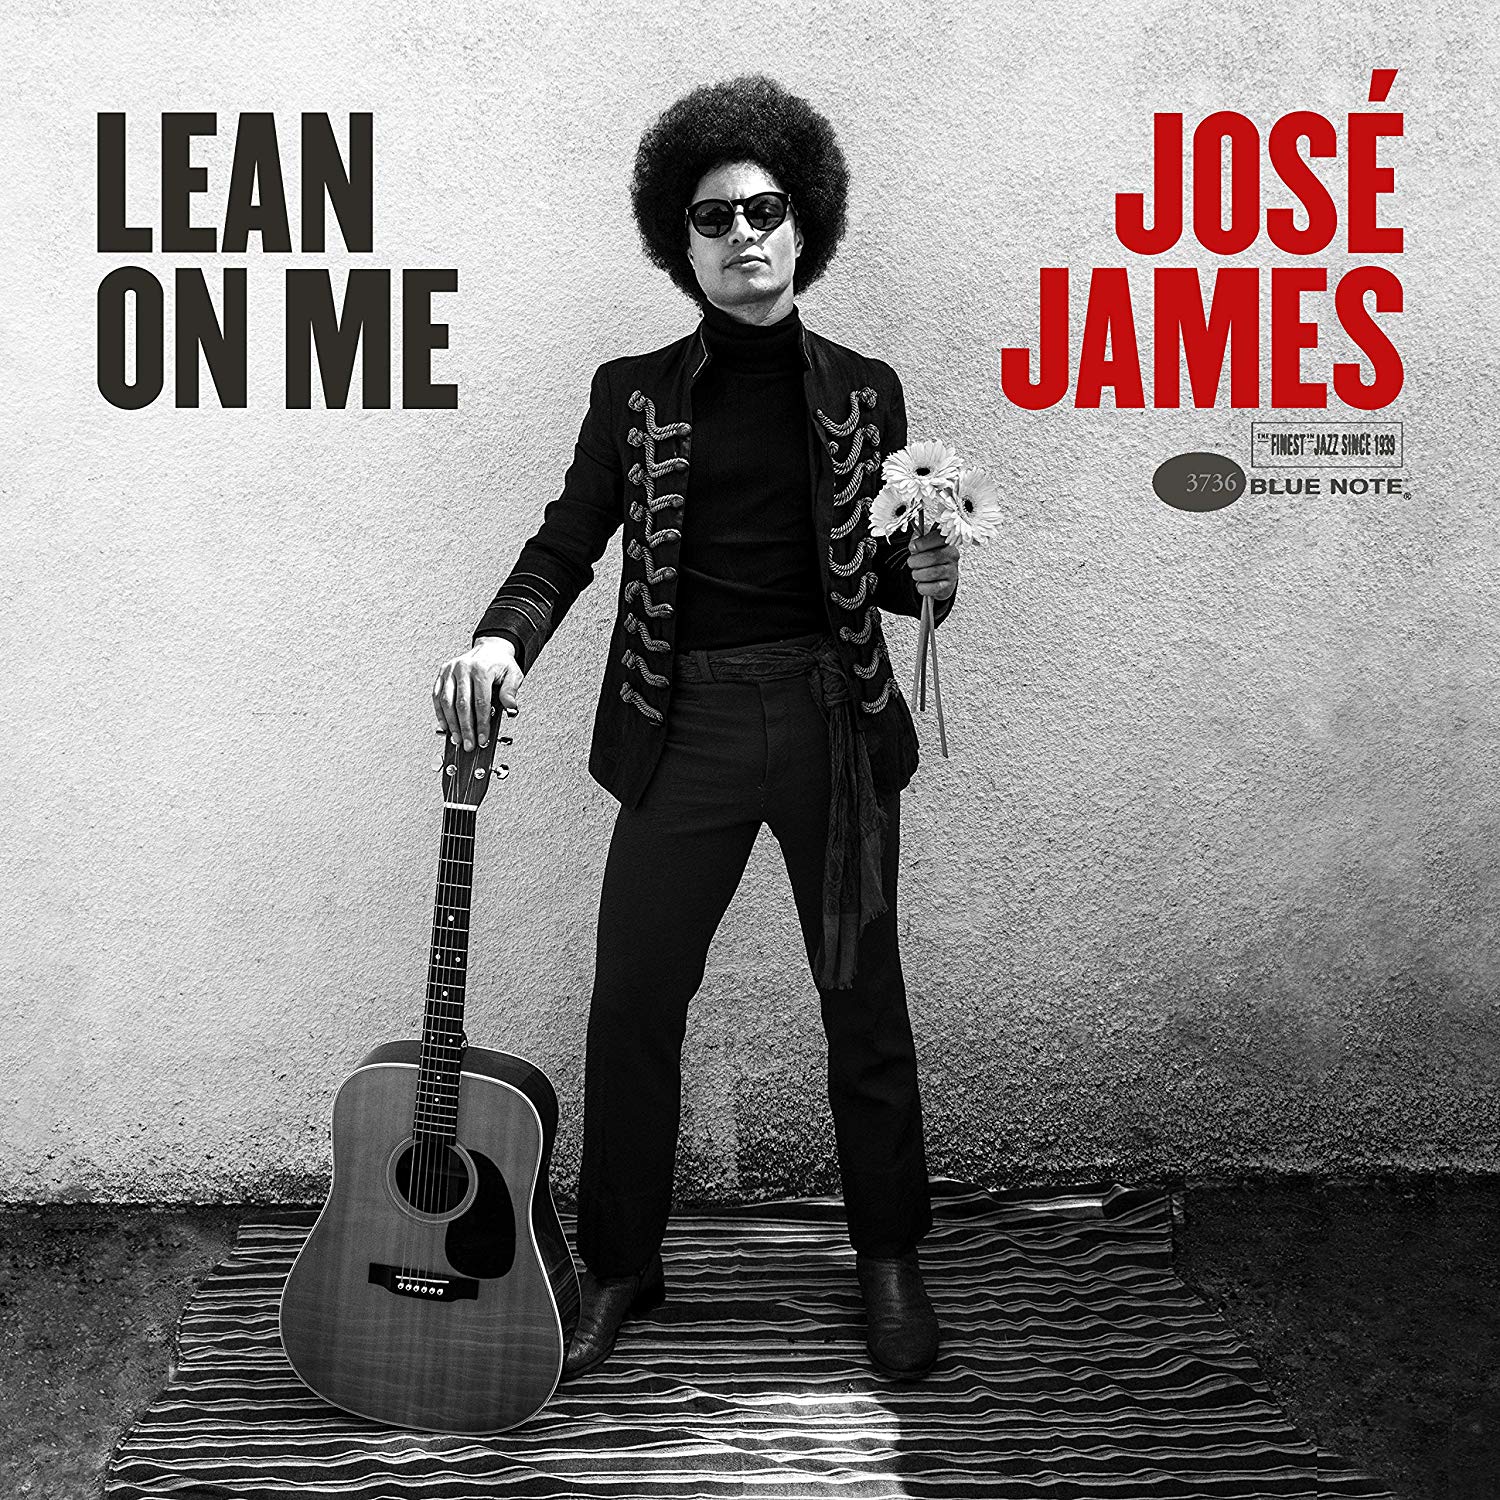 JOSÉ JAMES - Lean On Me cover 